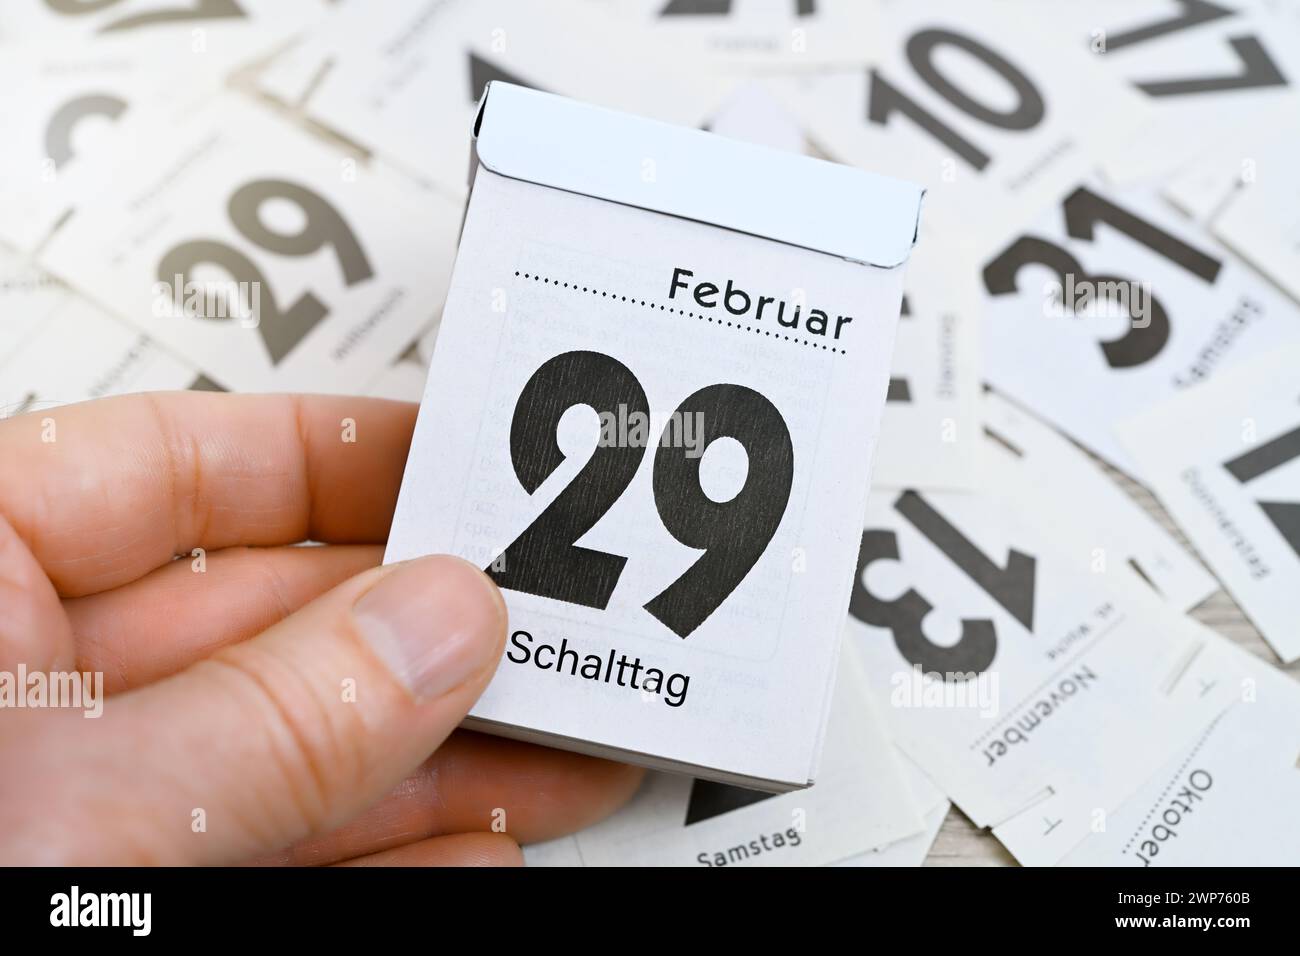 FOTOMONTAGE, Kalenderblatt vom 29. February uar mit Aufschrift Schalttag, Symbolfoto Schaltjahr Foto Stock